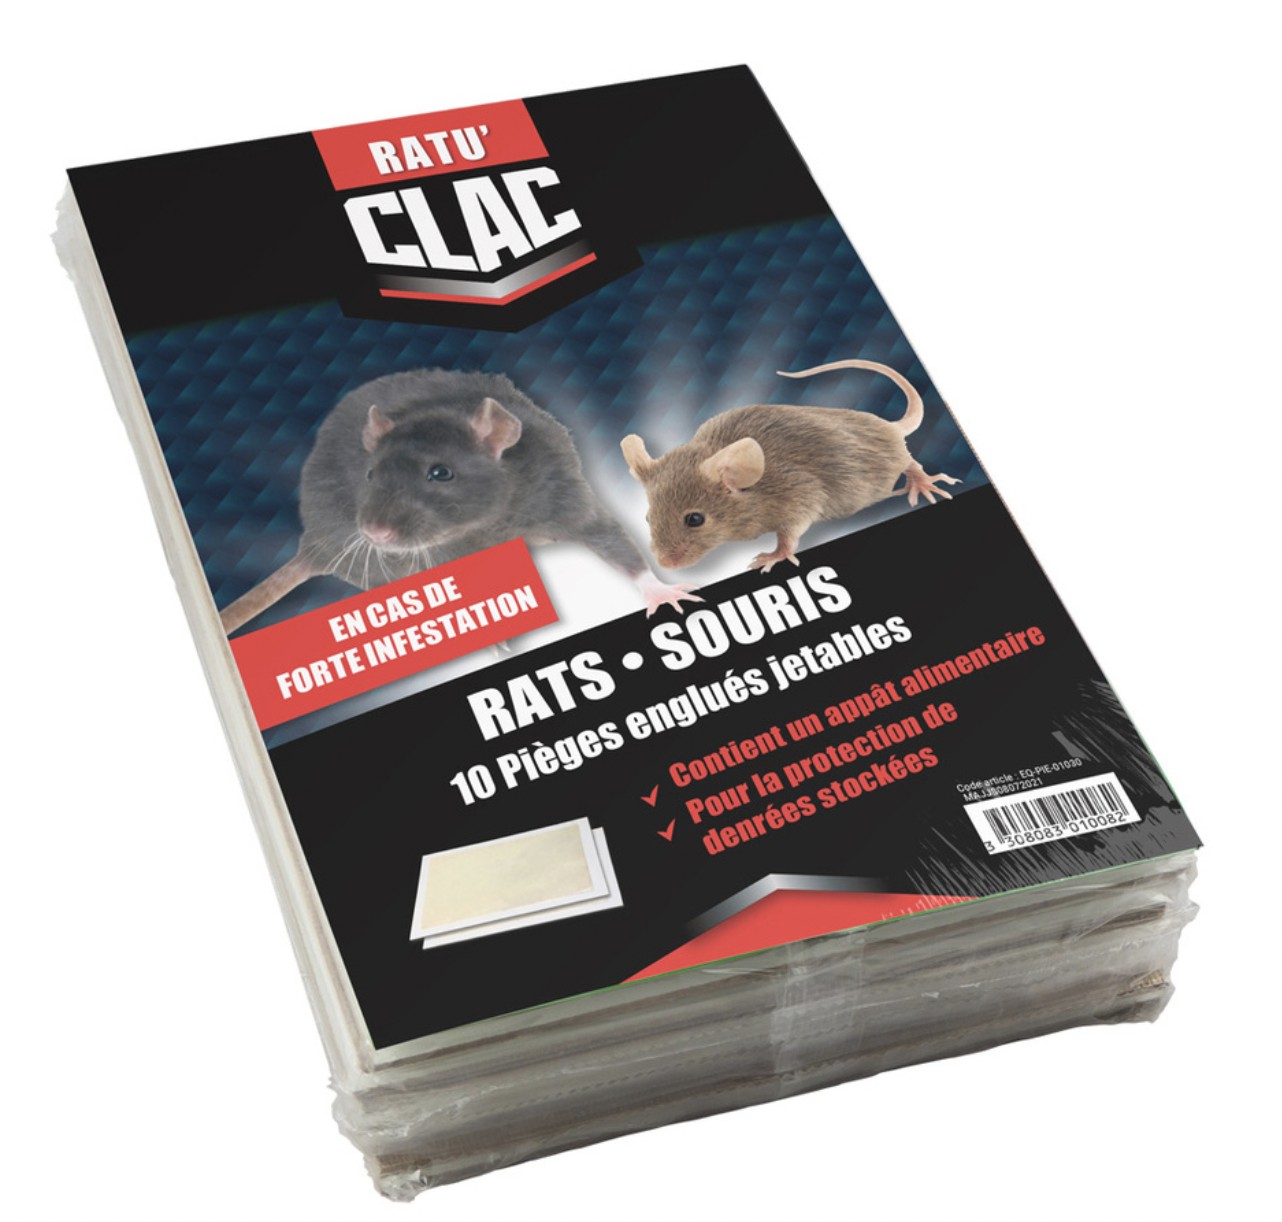 Plaque de Glu Bois pour Rats et Souris